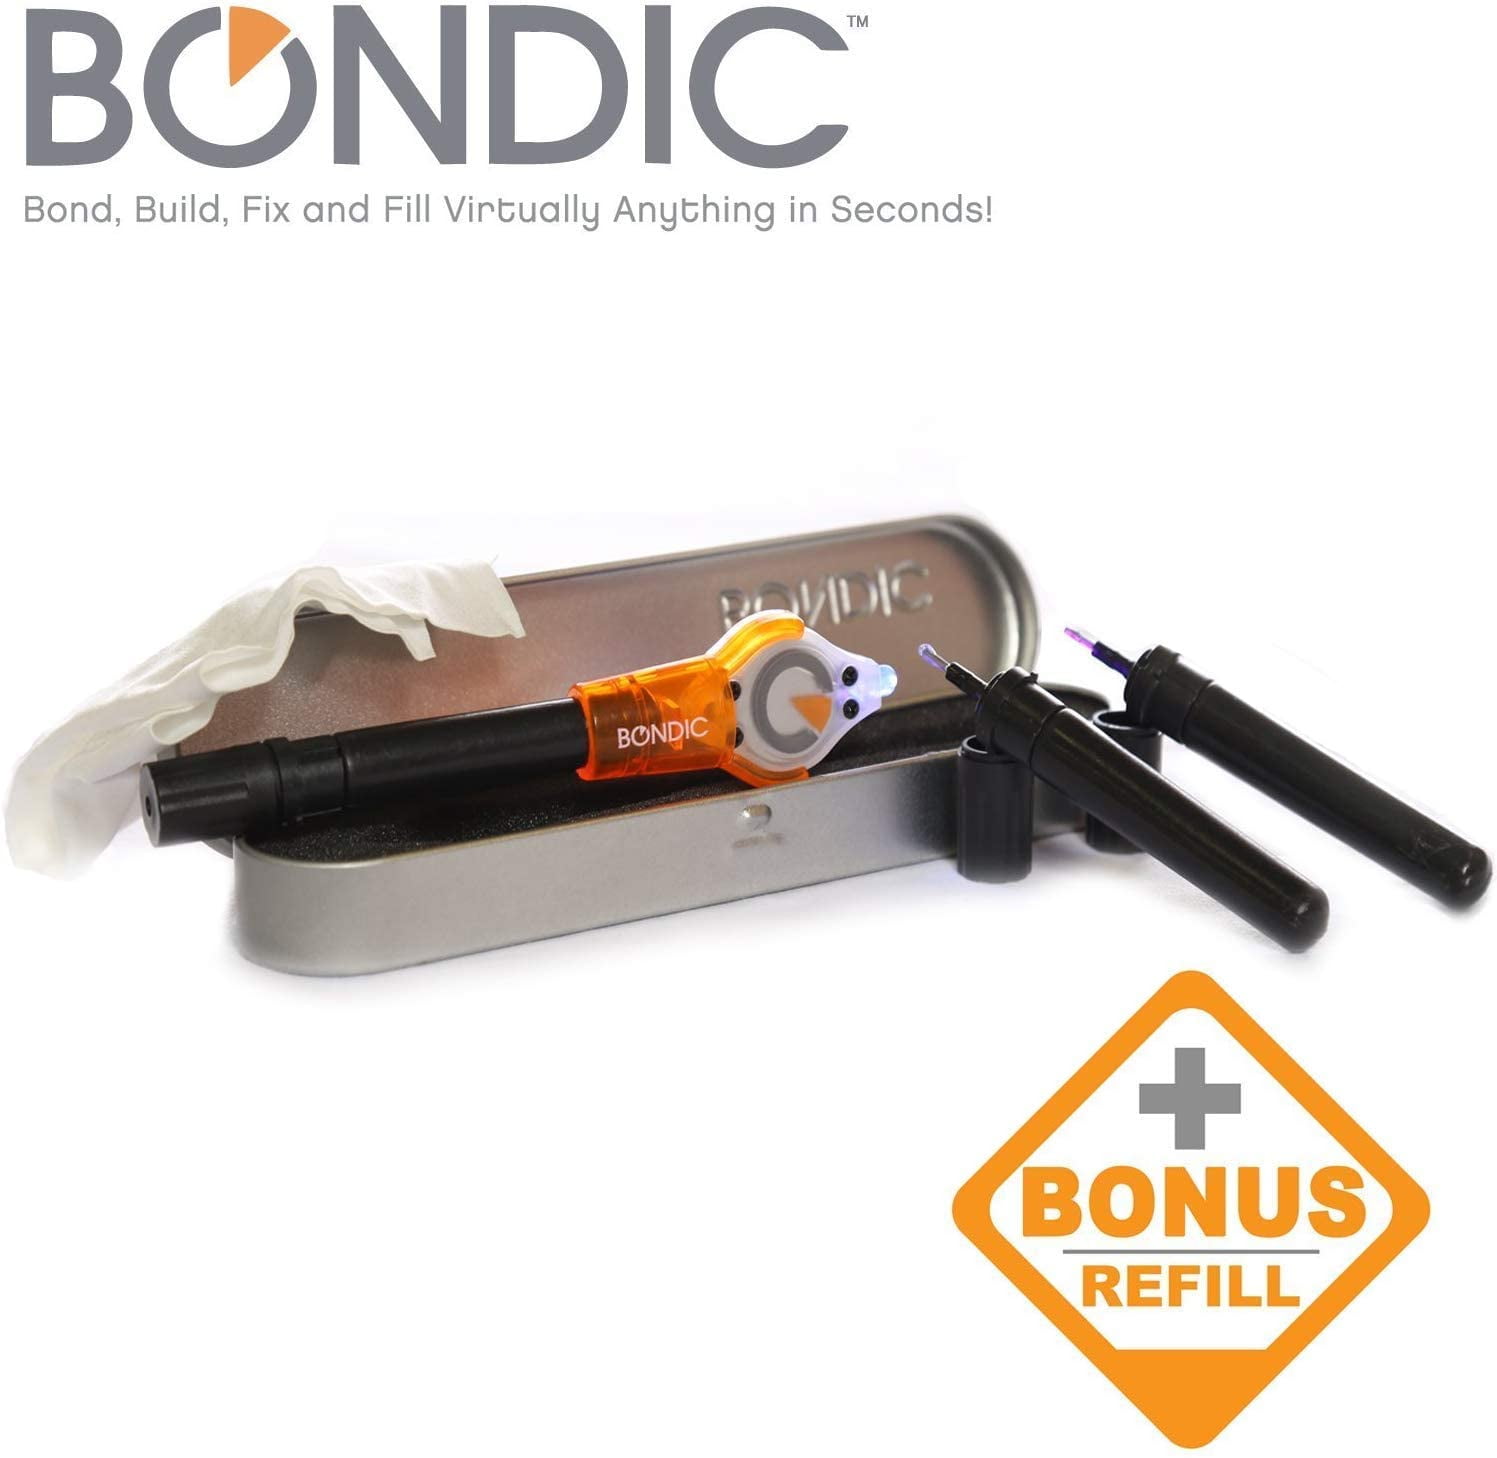 Bondic Review- UV Activated Glue 